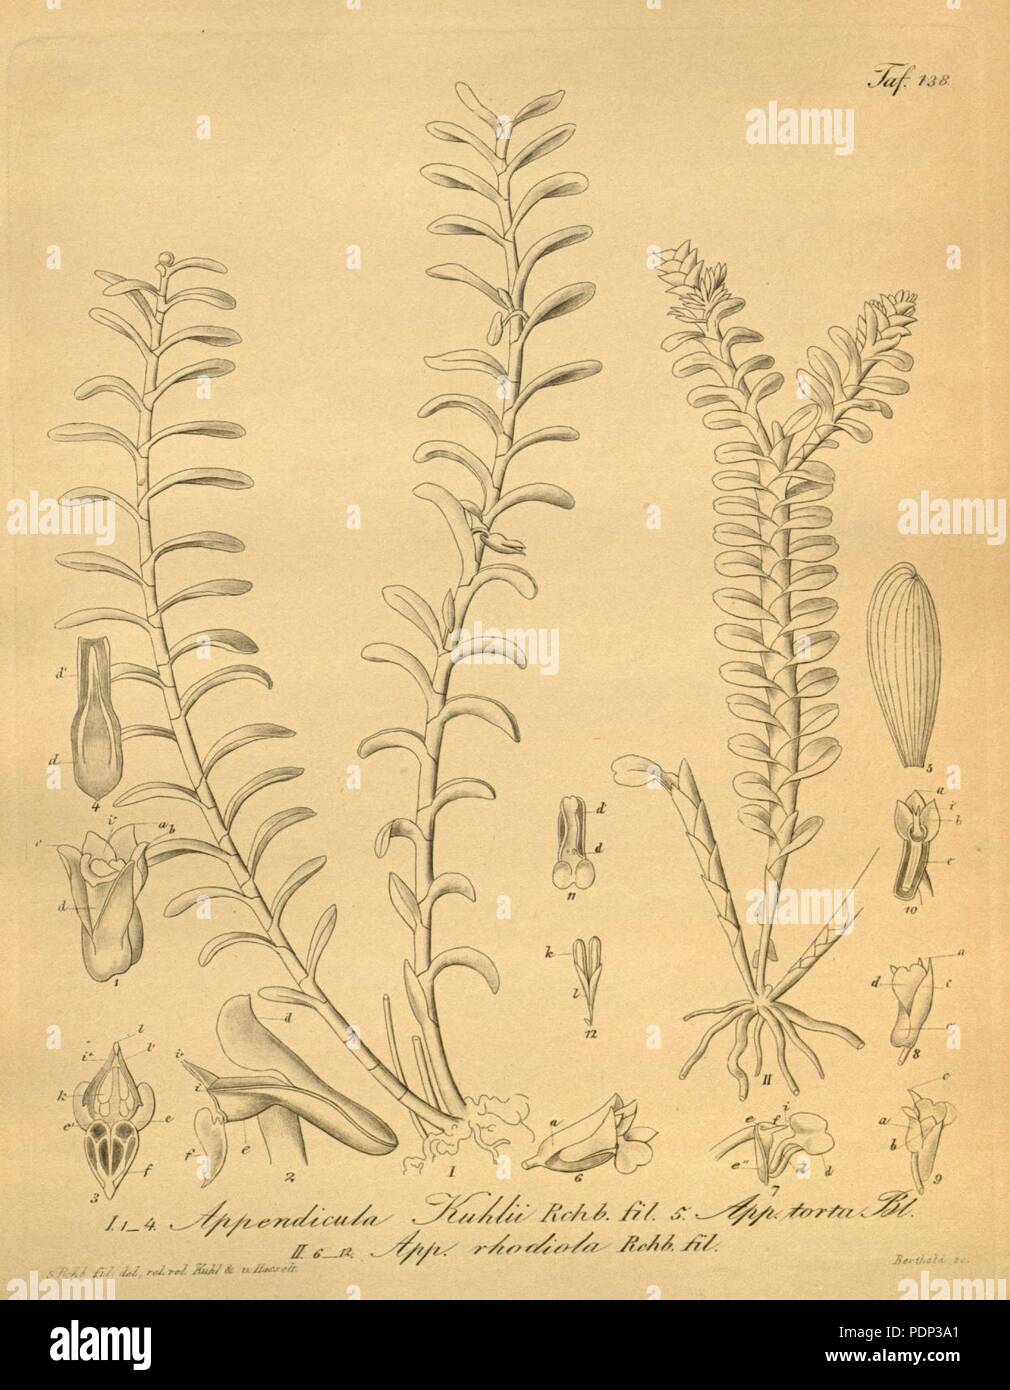 Appendicula carnosa (as Appendicula kuhlii) - Appendicula torta (as Appendicula rhodiola) - Appendicula torta - Xenia 2-138 (1874). Stock Photo